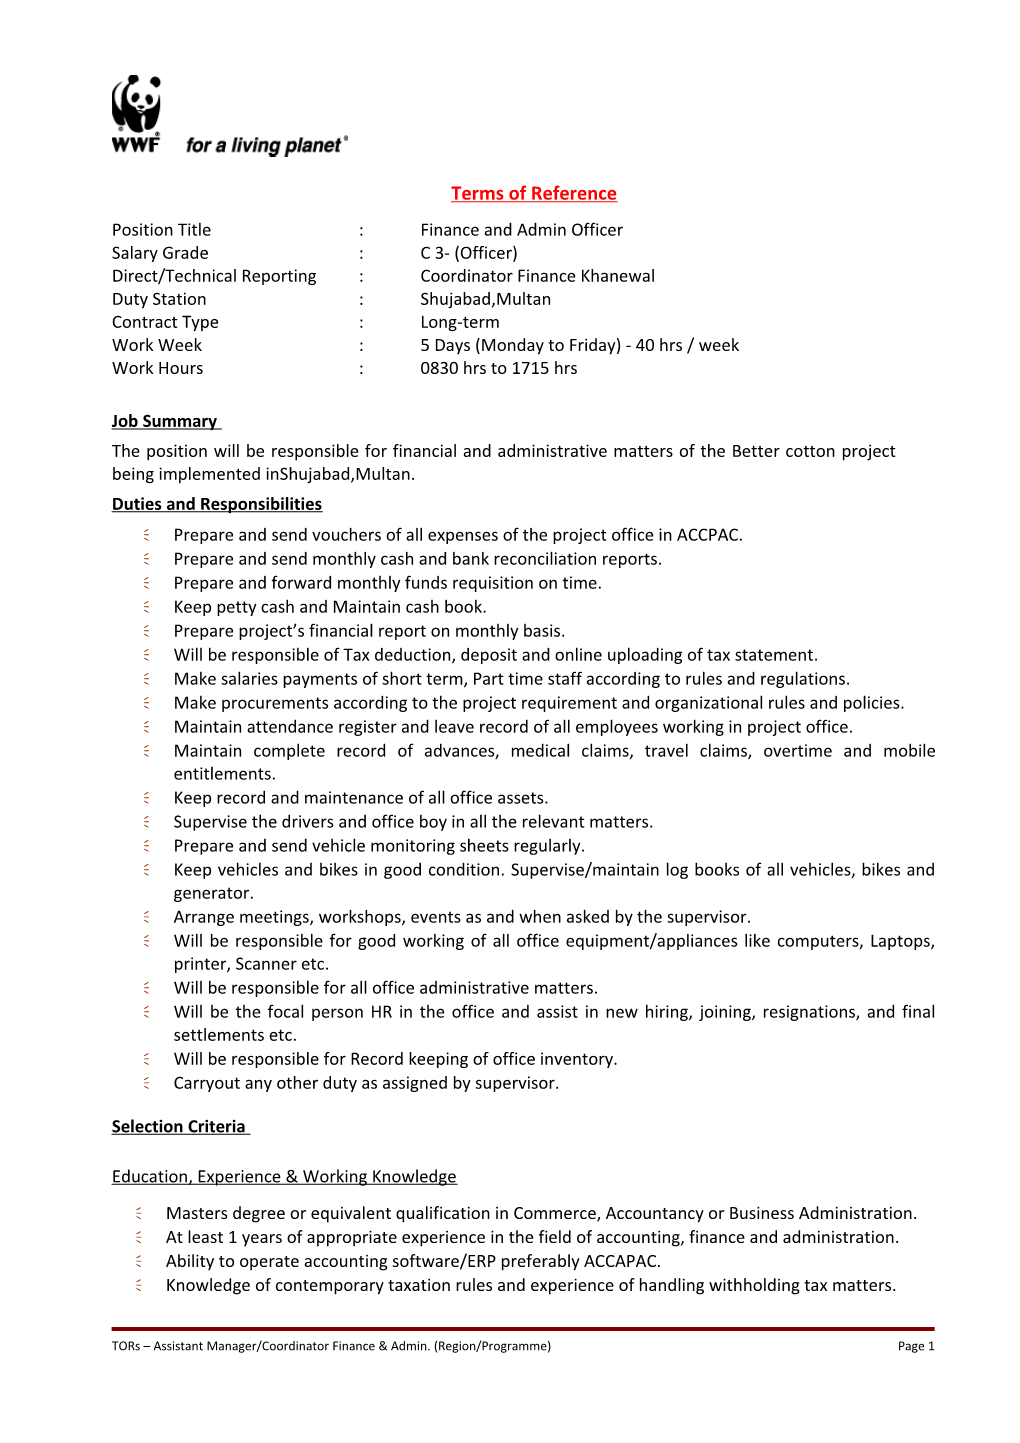 Draft Job Description For International Technical Advisor